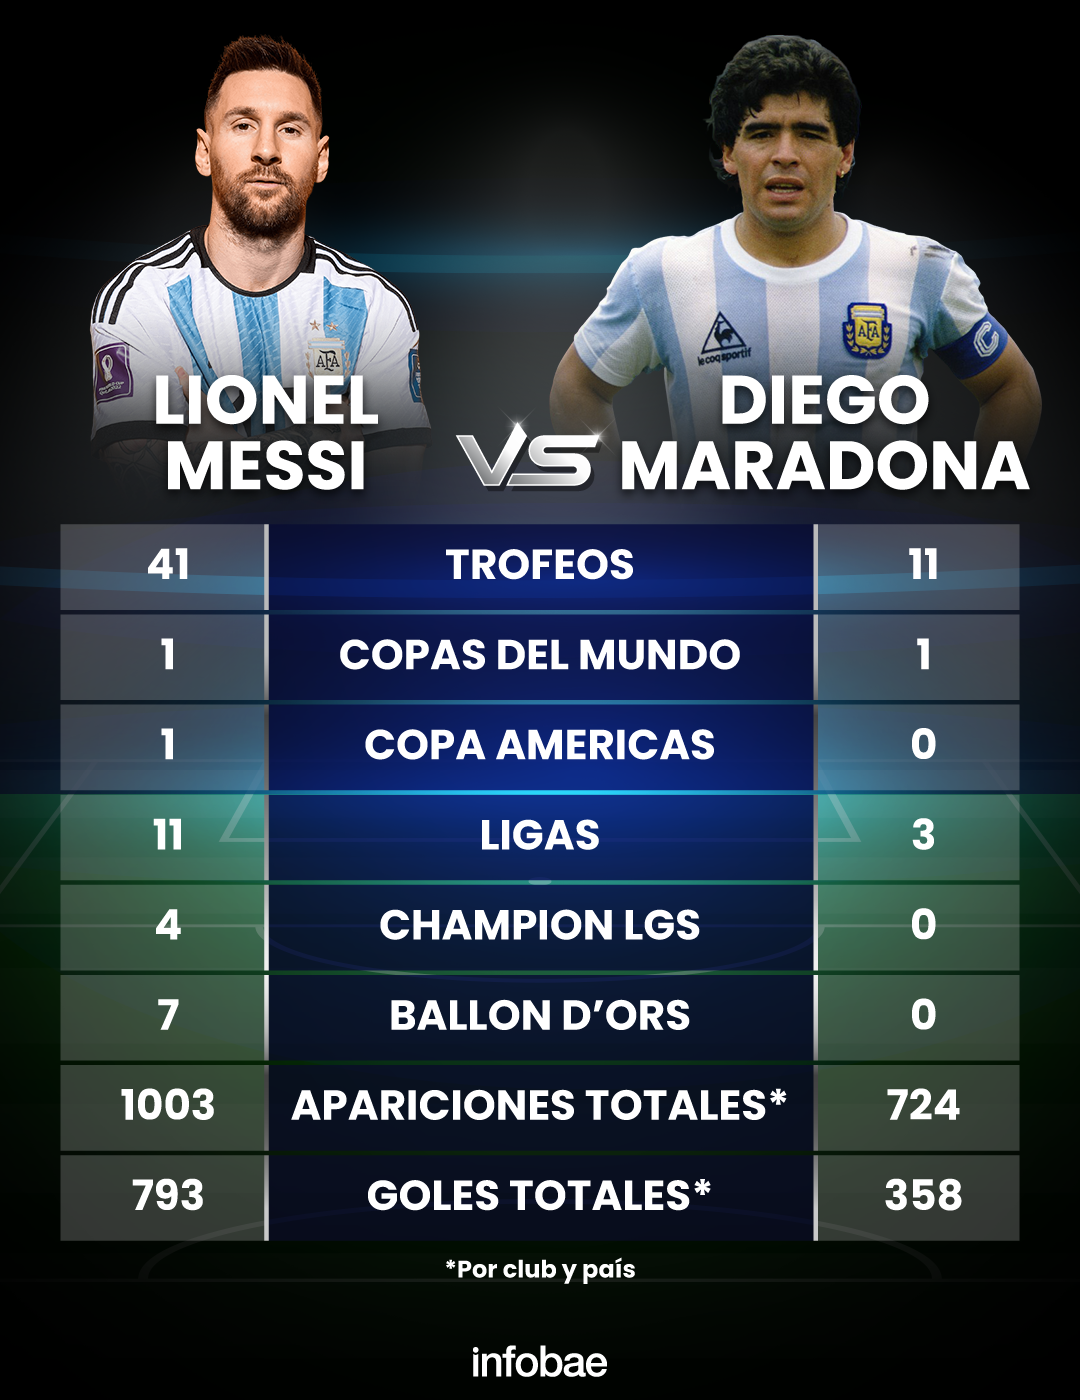 Lionel Messi Vs Diego Maradona Gesichter Des Größten Idols Des Argentinischen Fußballs Ceosg